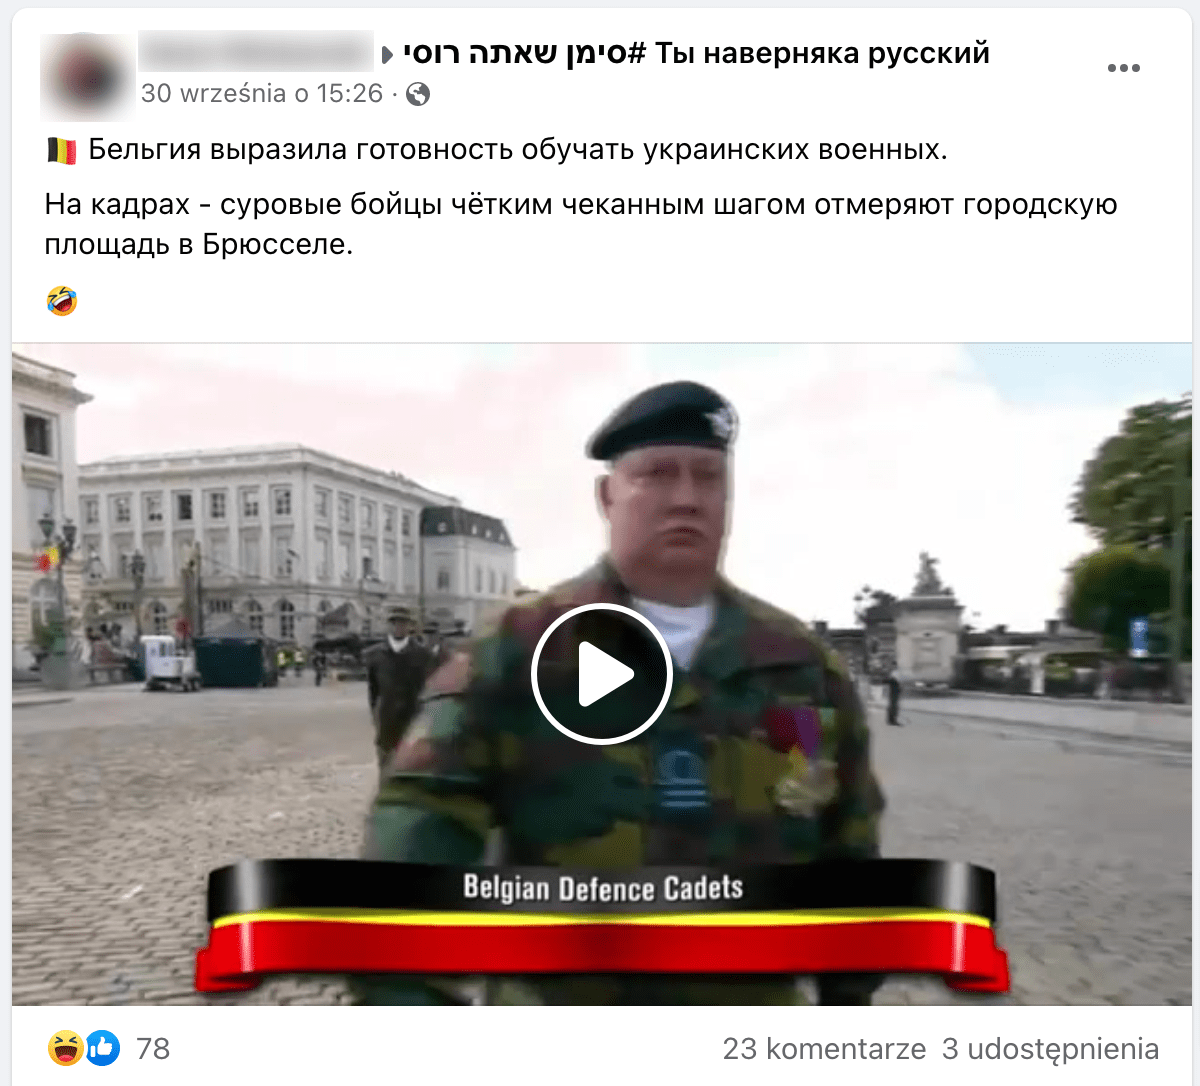 Скриншот анализируемого поста. В кадре видеоролика мы видим солдата в военной форме и черном берете. Ниже изображен флаг Бельгии с надписью: "Belgian Defence Cadets" (т.е. Бельгийские кадеты обороны).